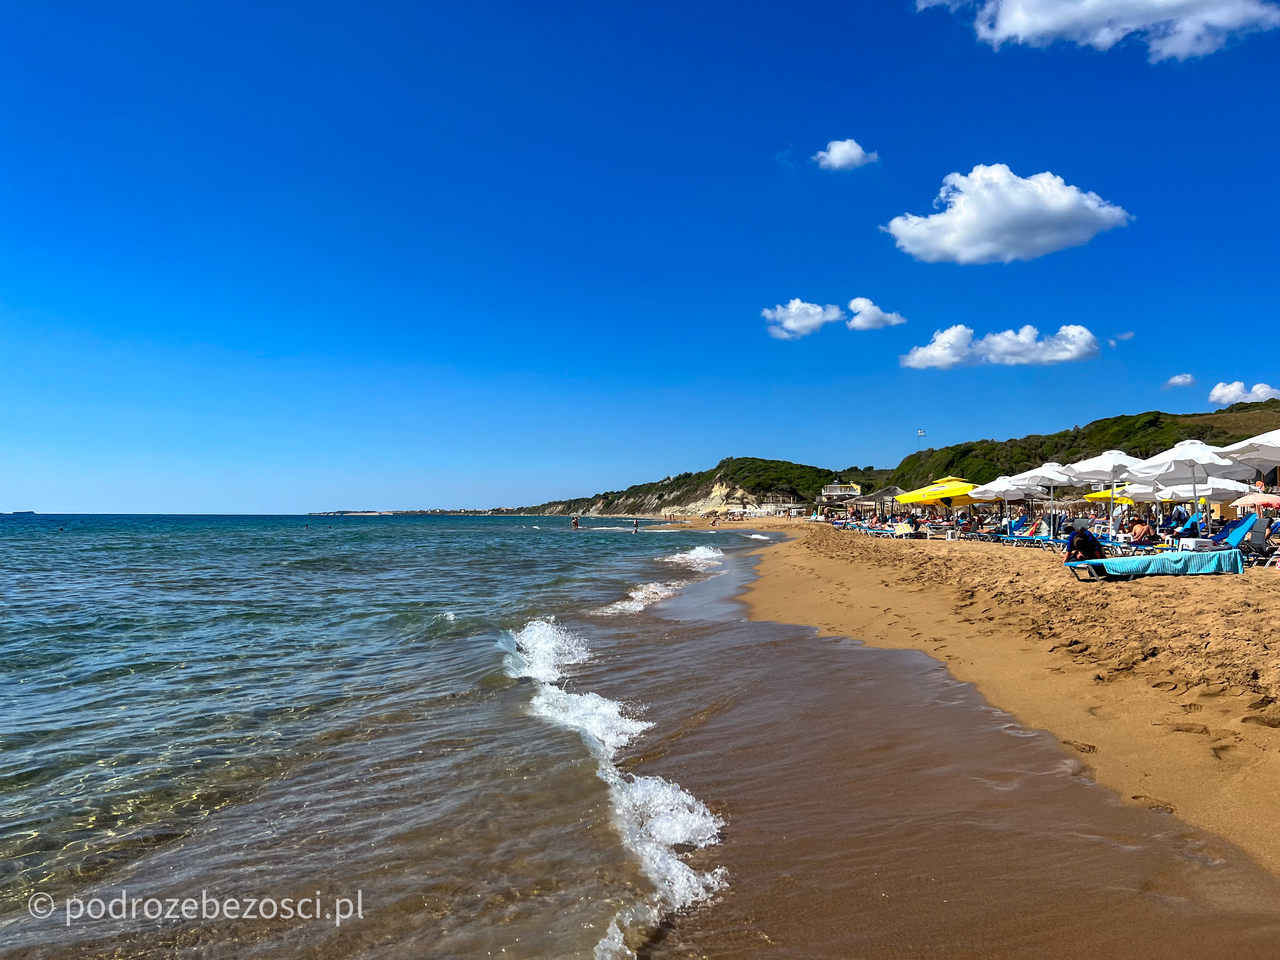 marathias beach najpiekniejsze-plaze-na-korfu-grecja-plaza-piaszczysta-gdzie-warto-plazowac-jak-wygladaja-plaze-na-korfu-mapa-top-10-beaches-corfu-greece